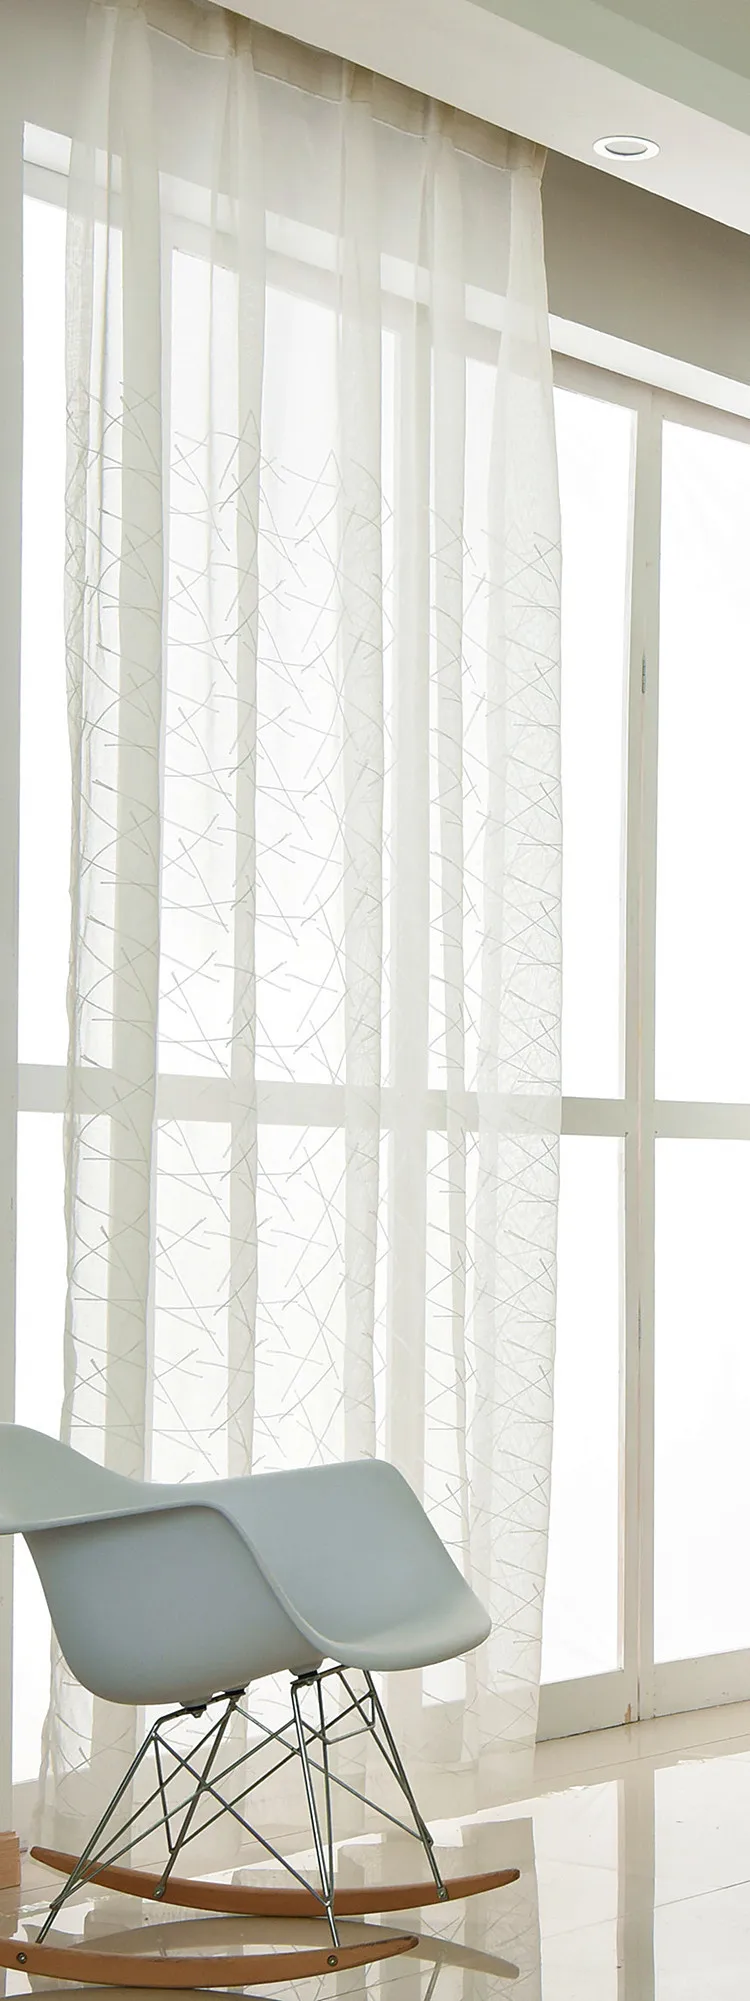 Горячая синель серебряные жаккардовые затемняющие шторы для гостиной шторы на крючках для спальни Штора для окна американская драпировка